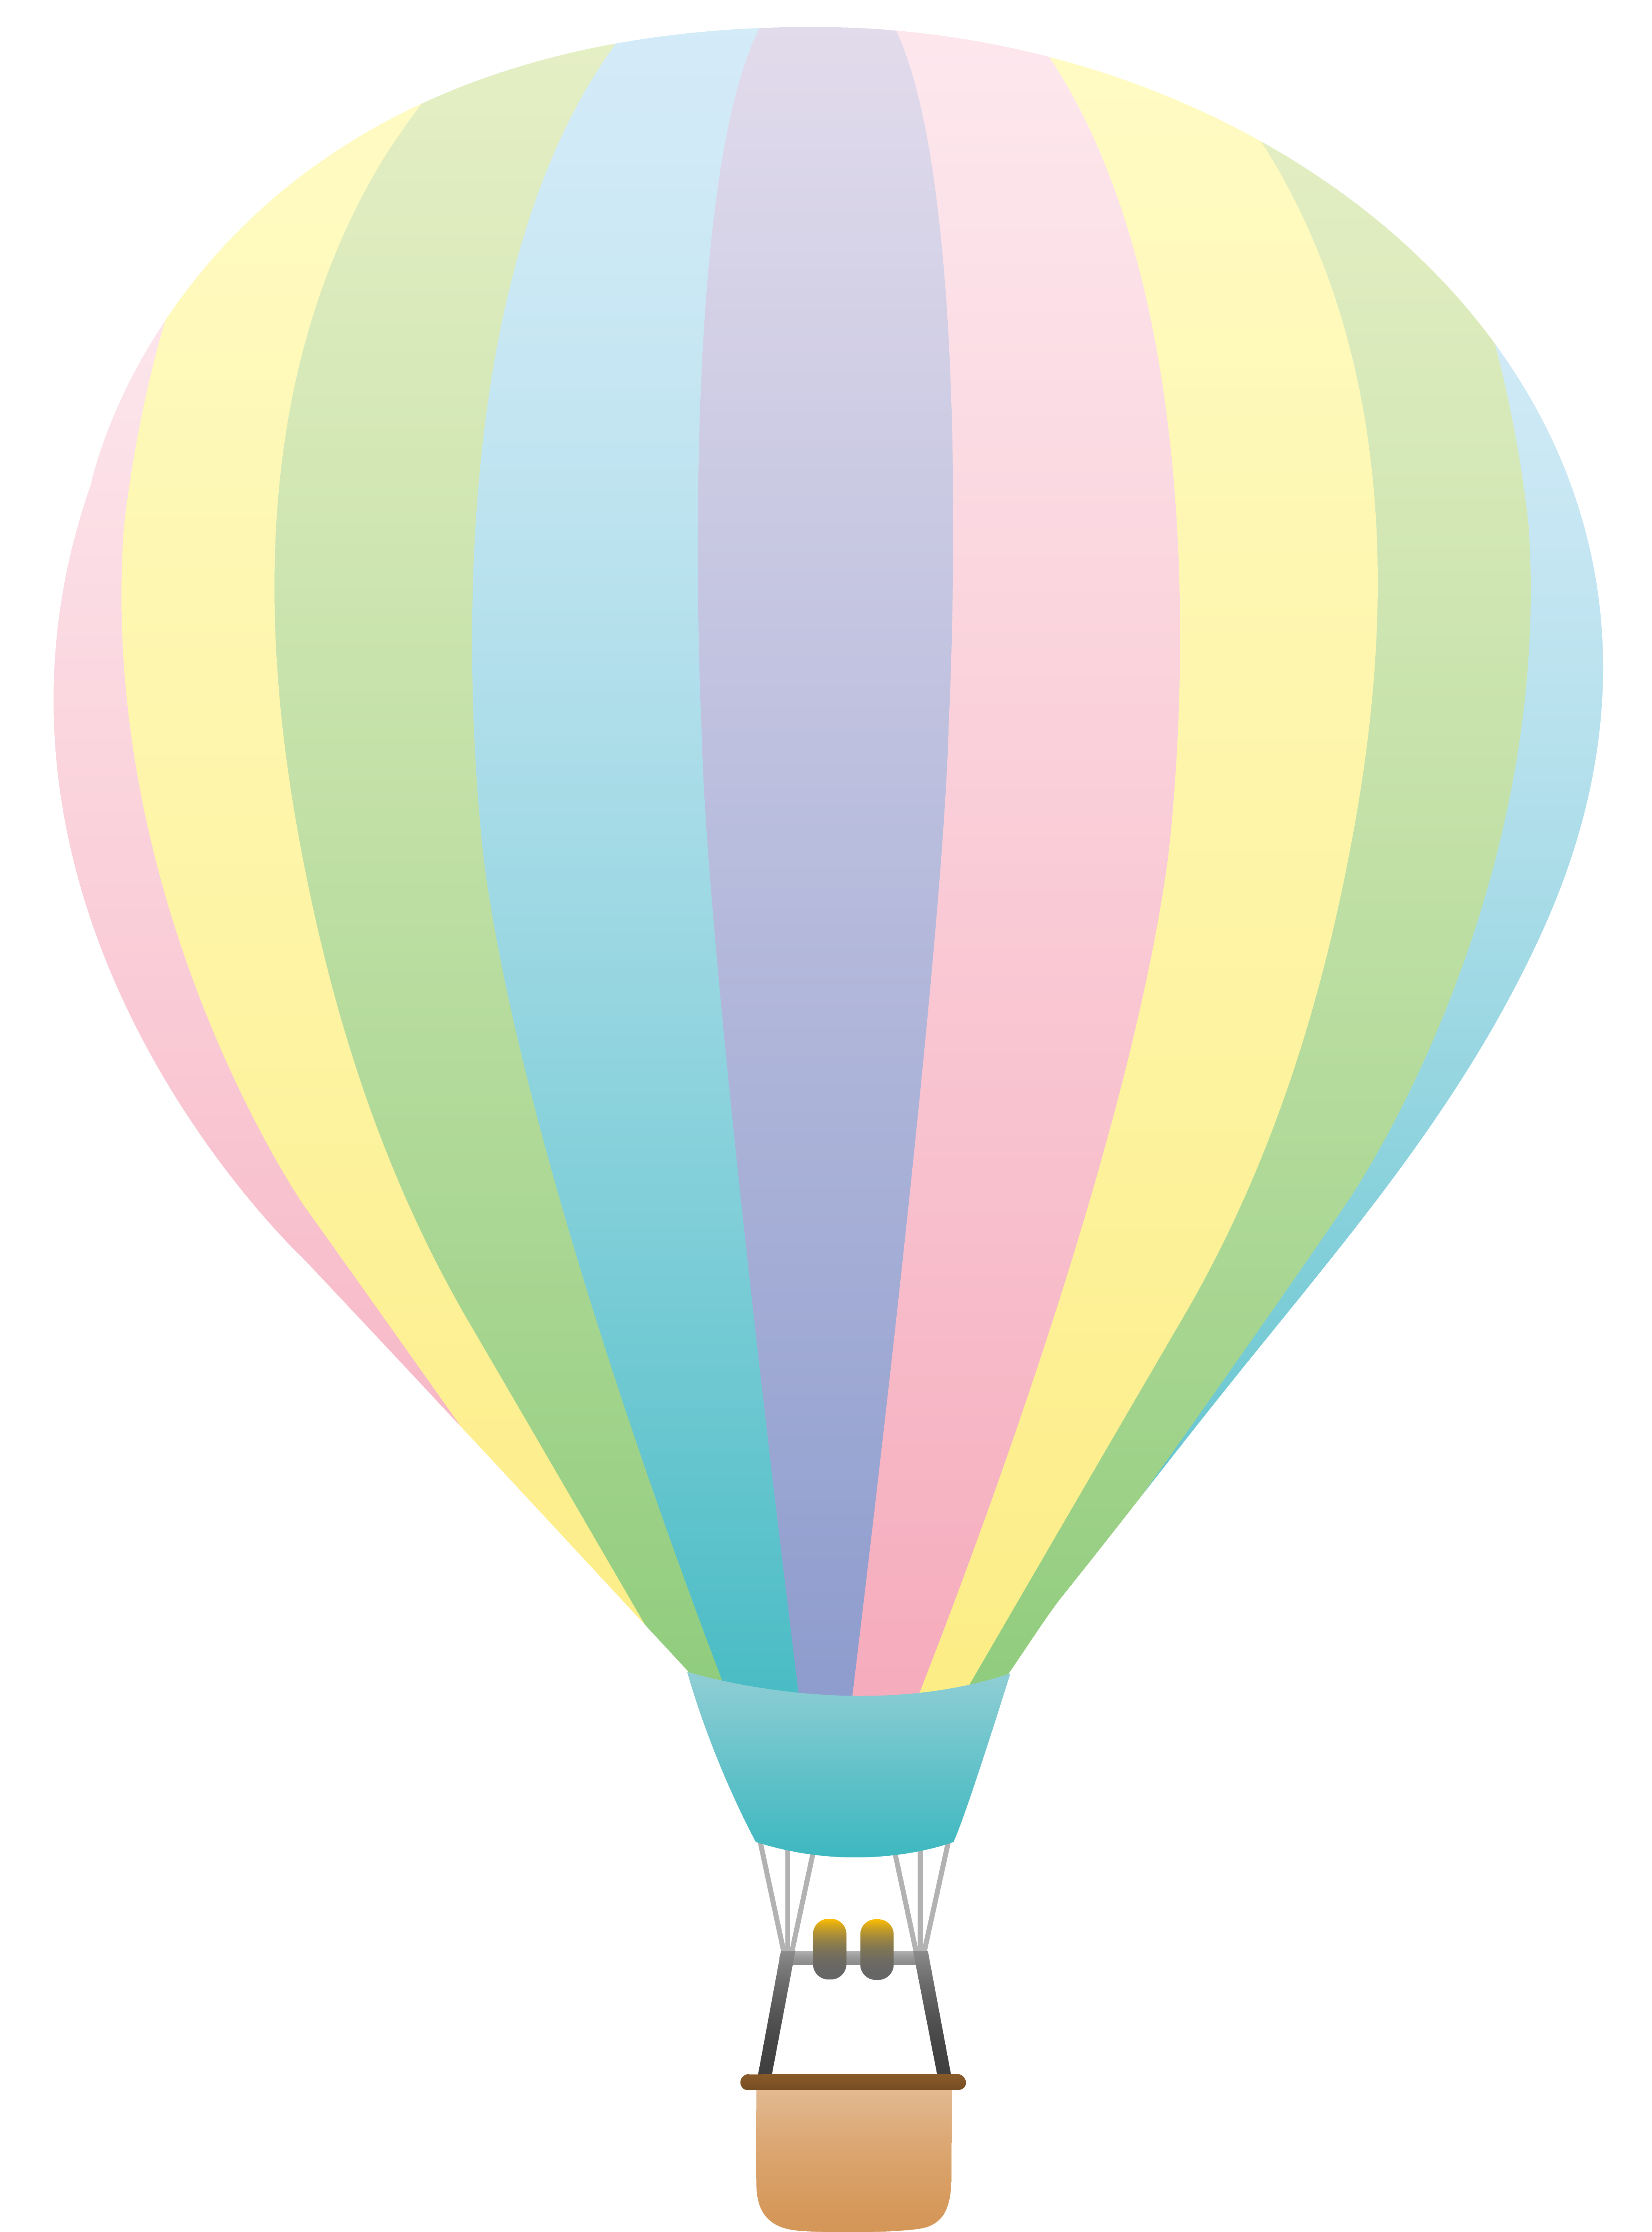 Steampunk clipart hot air balloon. Clip art striped pastel